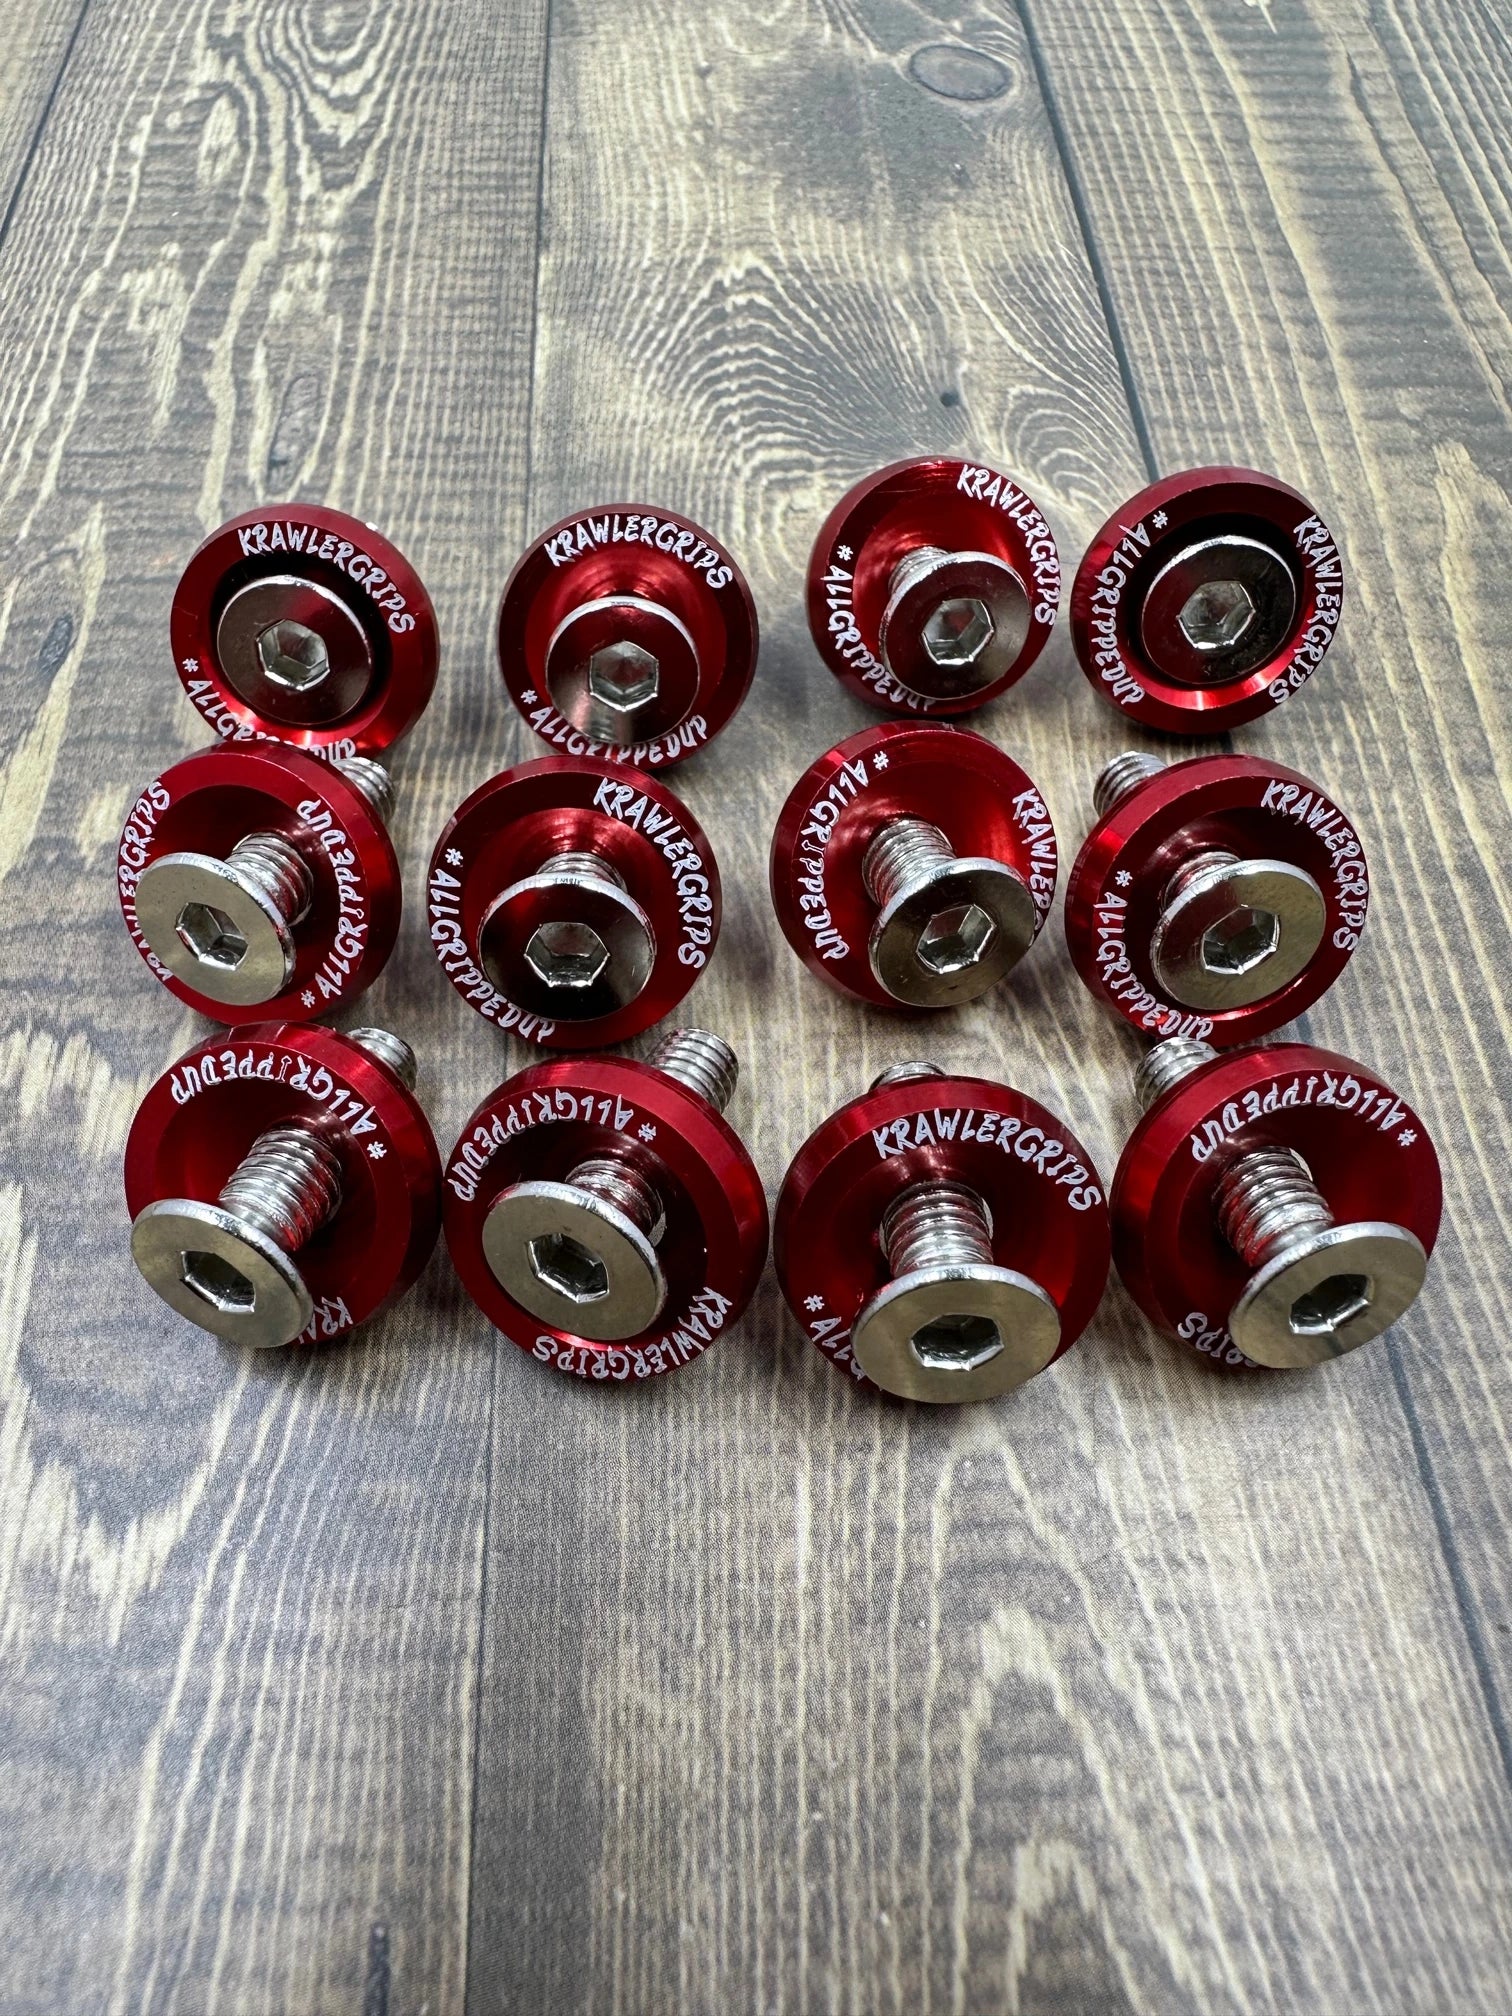 12 red washer jdm - krawlergrips